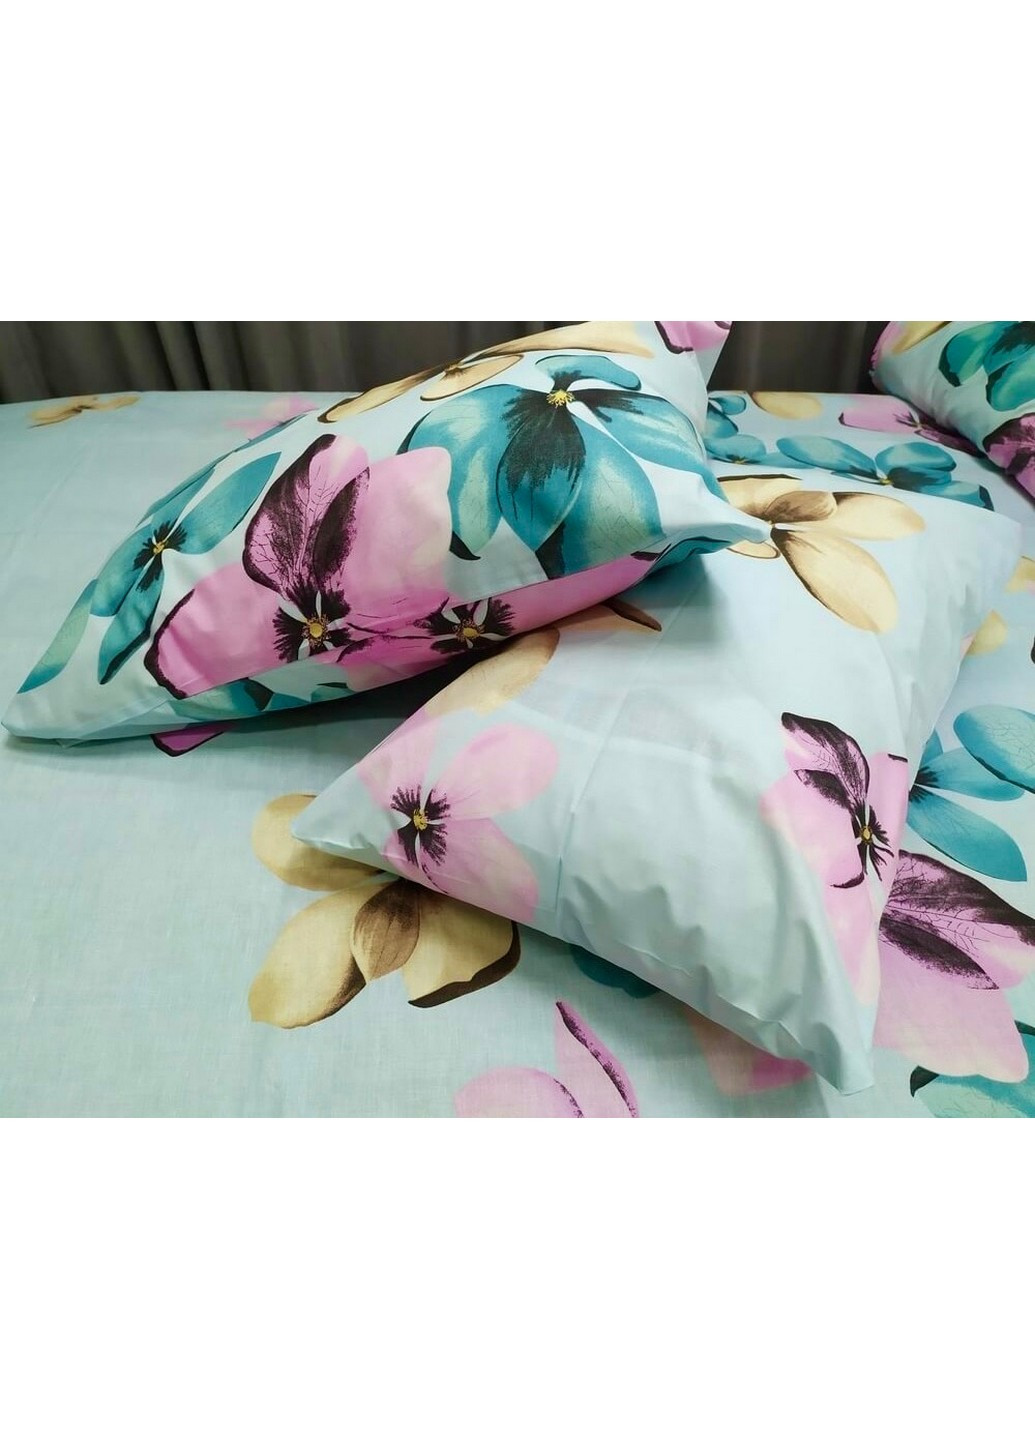 Комплект постельного белья Разноцветные цветы 150х215 см Наша Швейка (254472874)